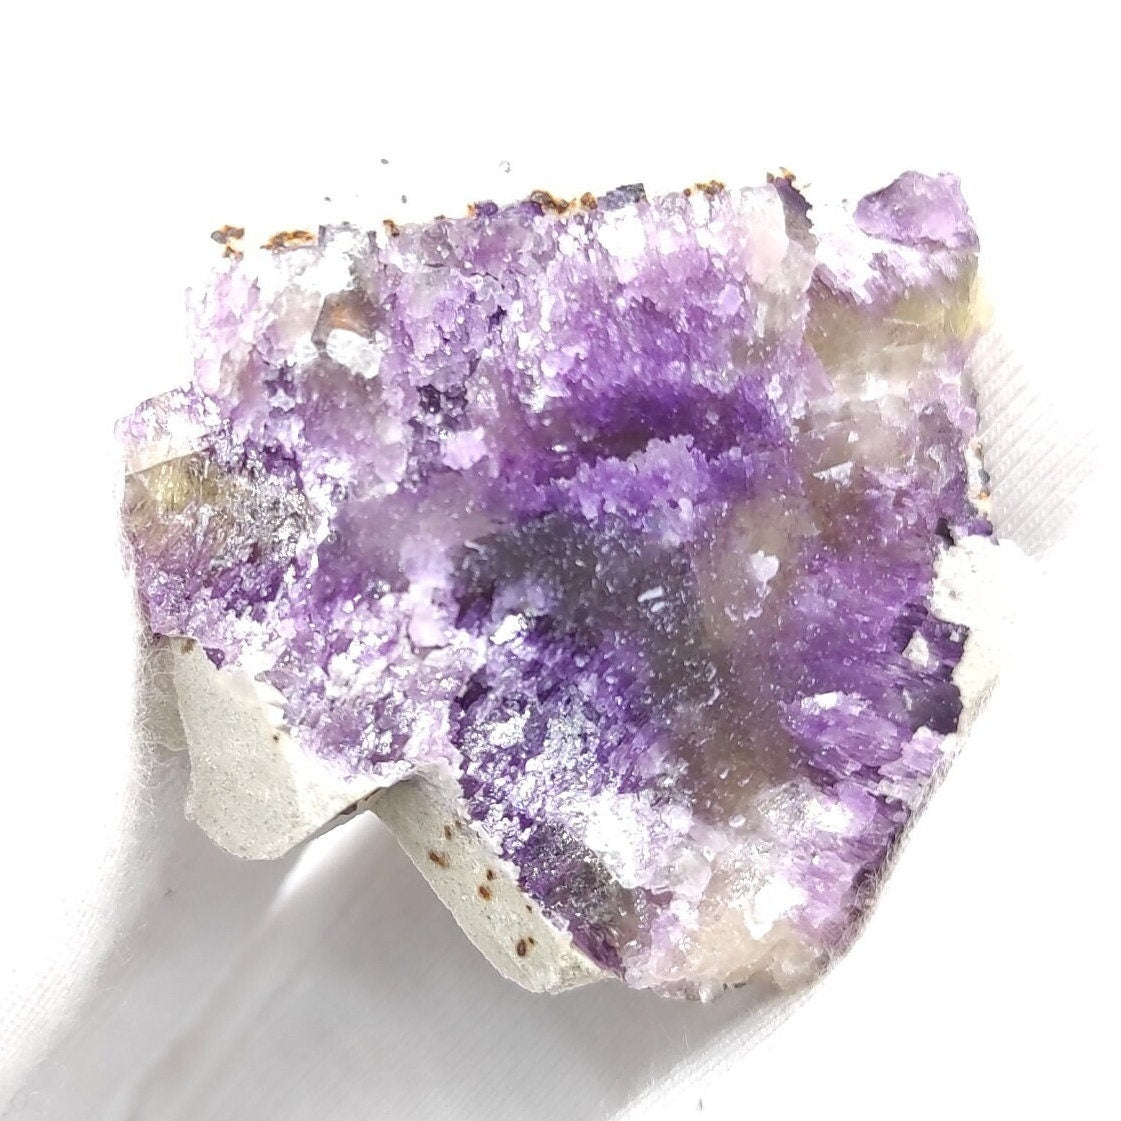 20g Illinois Fluorite Specimen - Purple Fluorite from Cave-in-Rock, Hardin County, Illinois - Natural Purple Fluorite Mineral Specimen